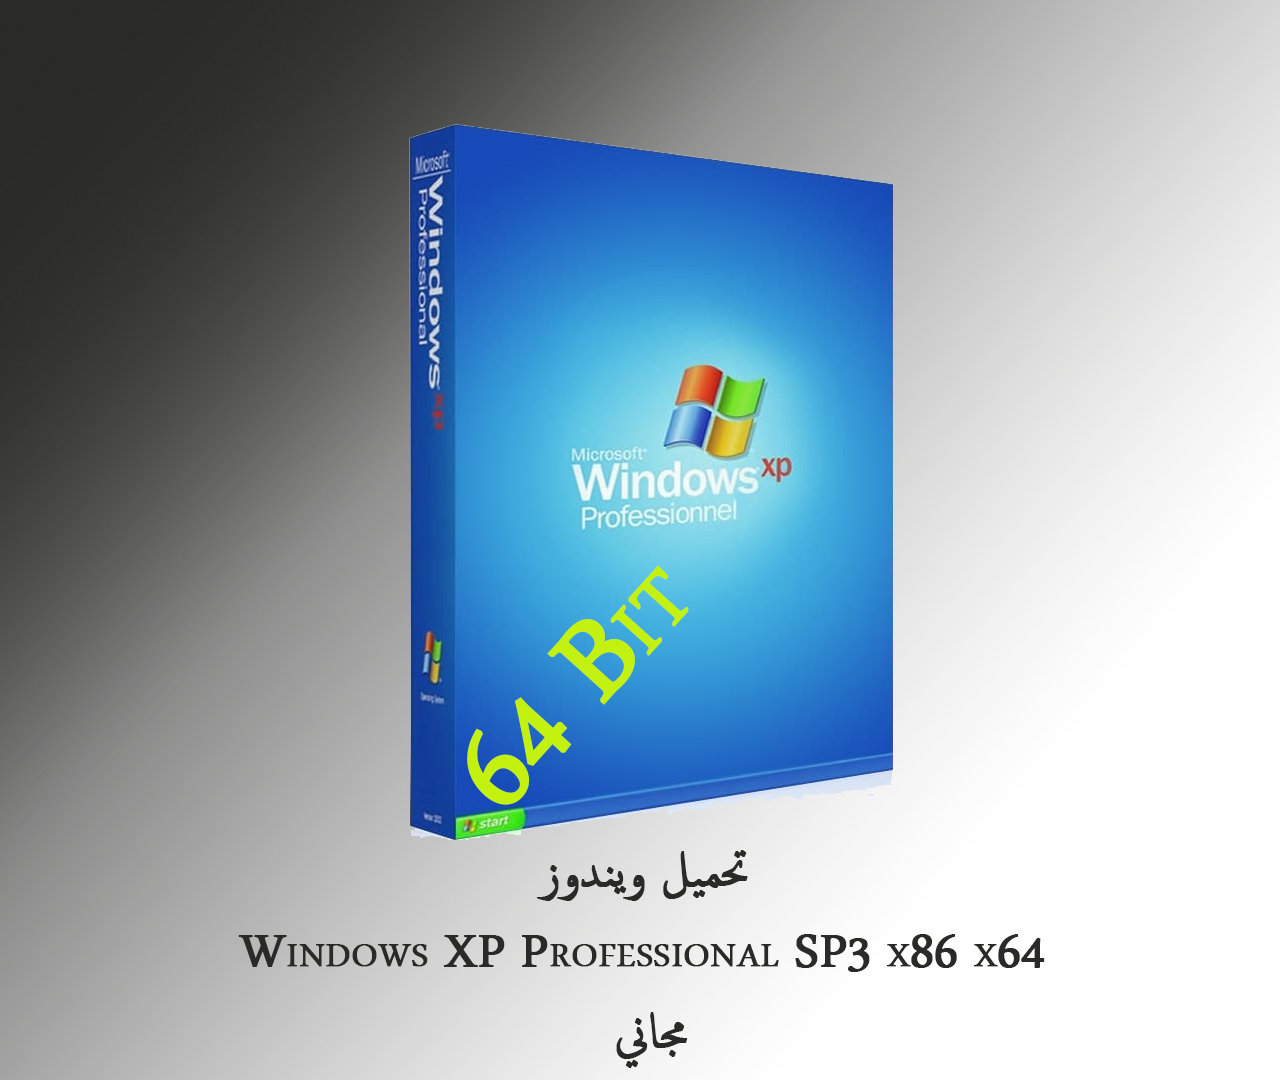 لأول مرة على المواقع العربية ويندوز إكس بي نسخة 64 بت Windows Xp